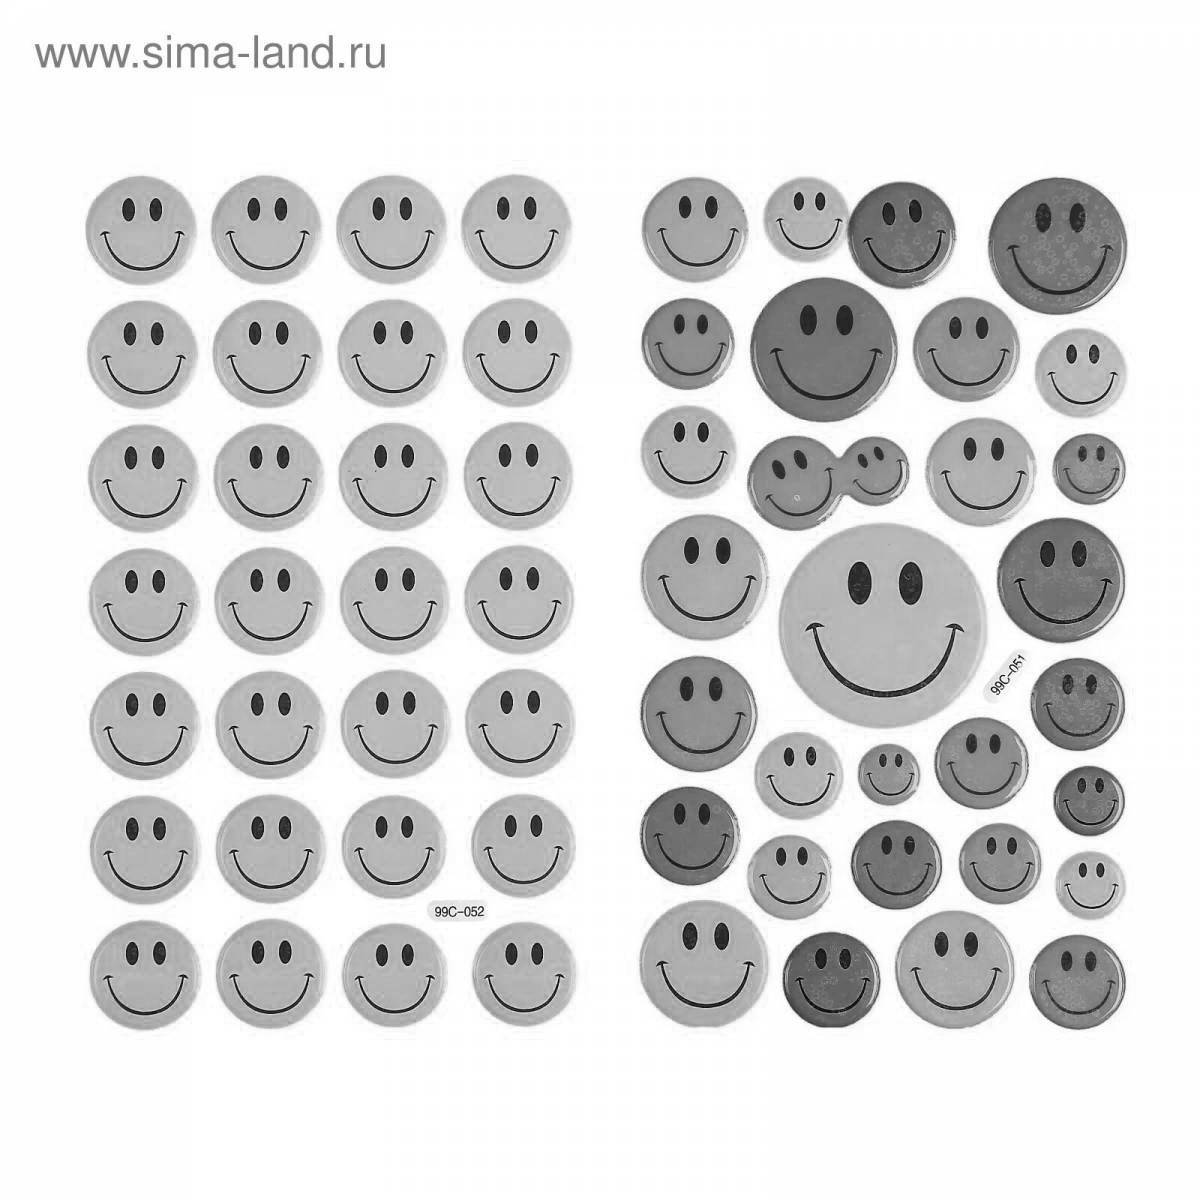 Smiling coloring indie baby emoji